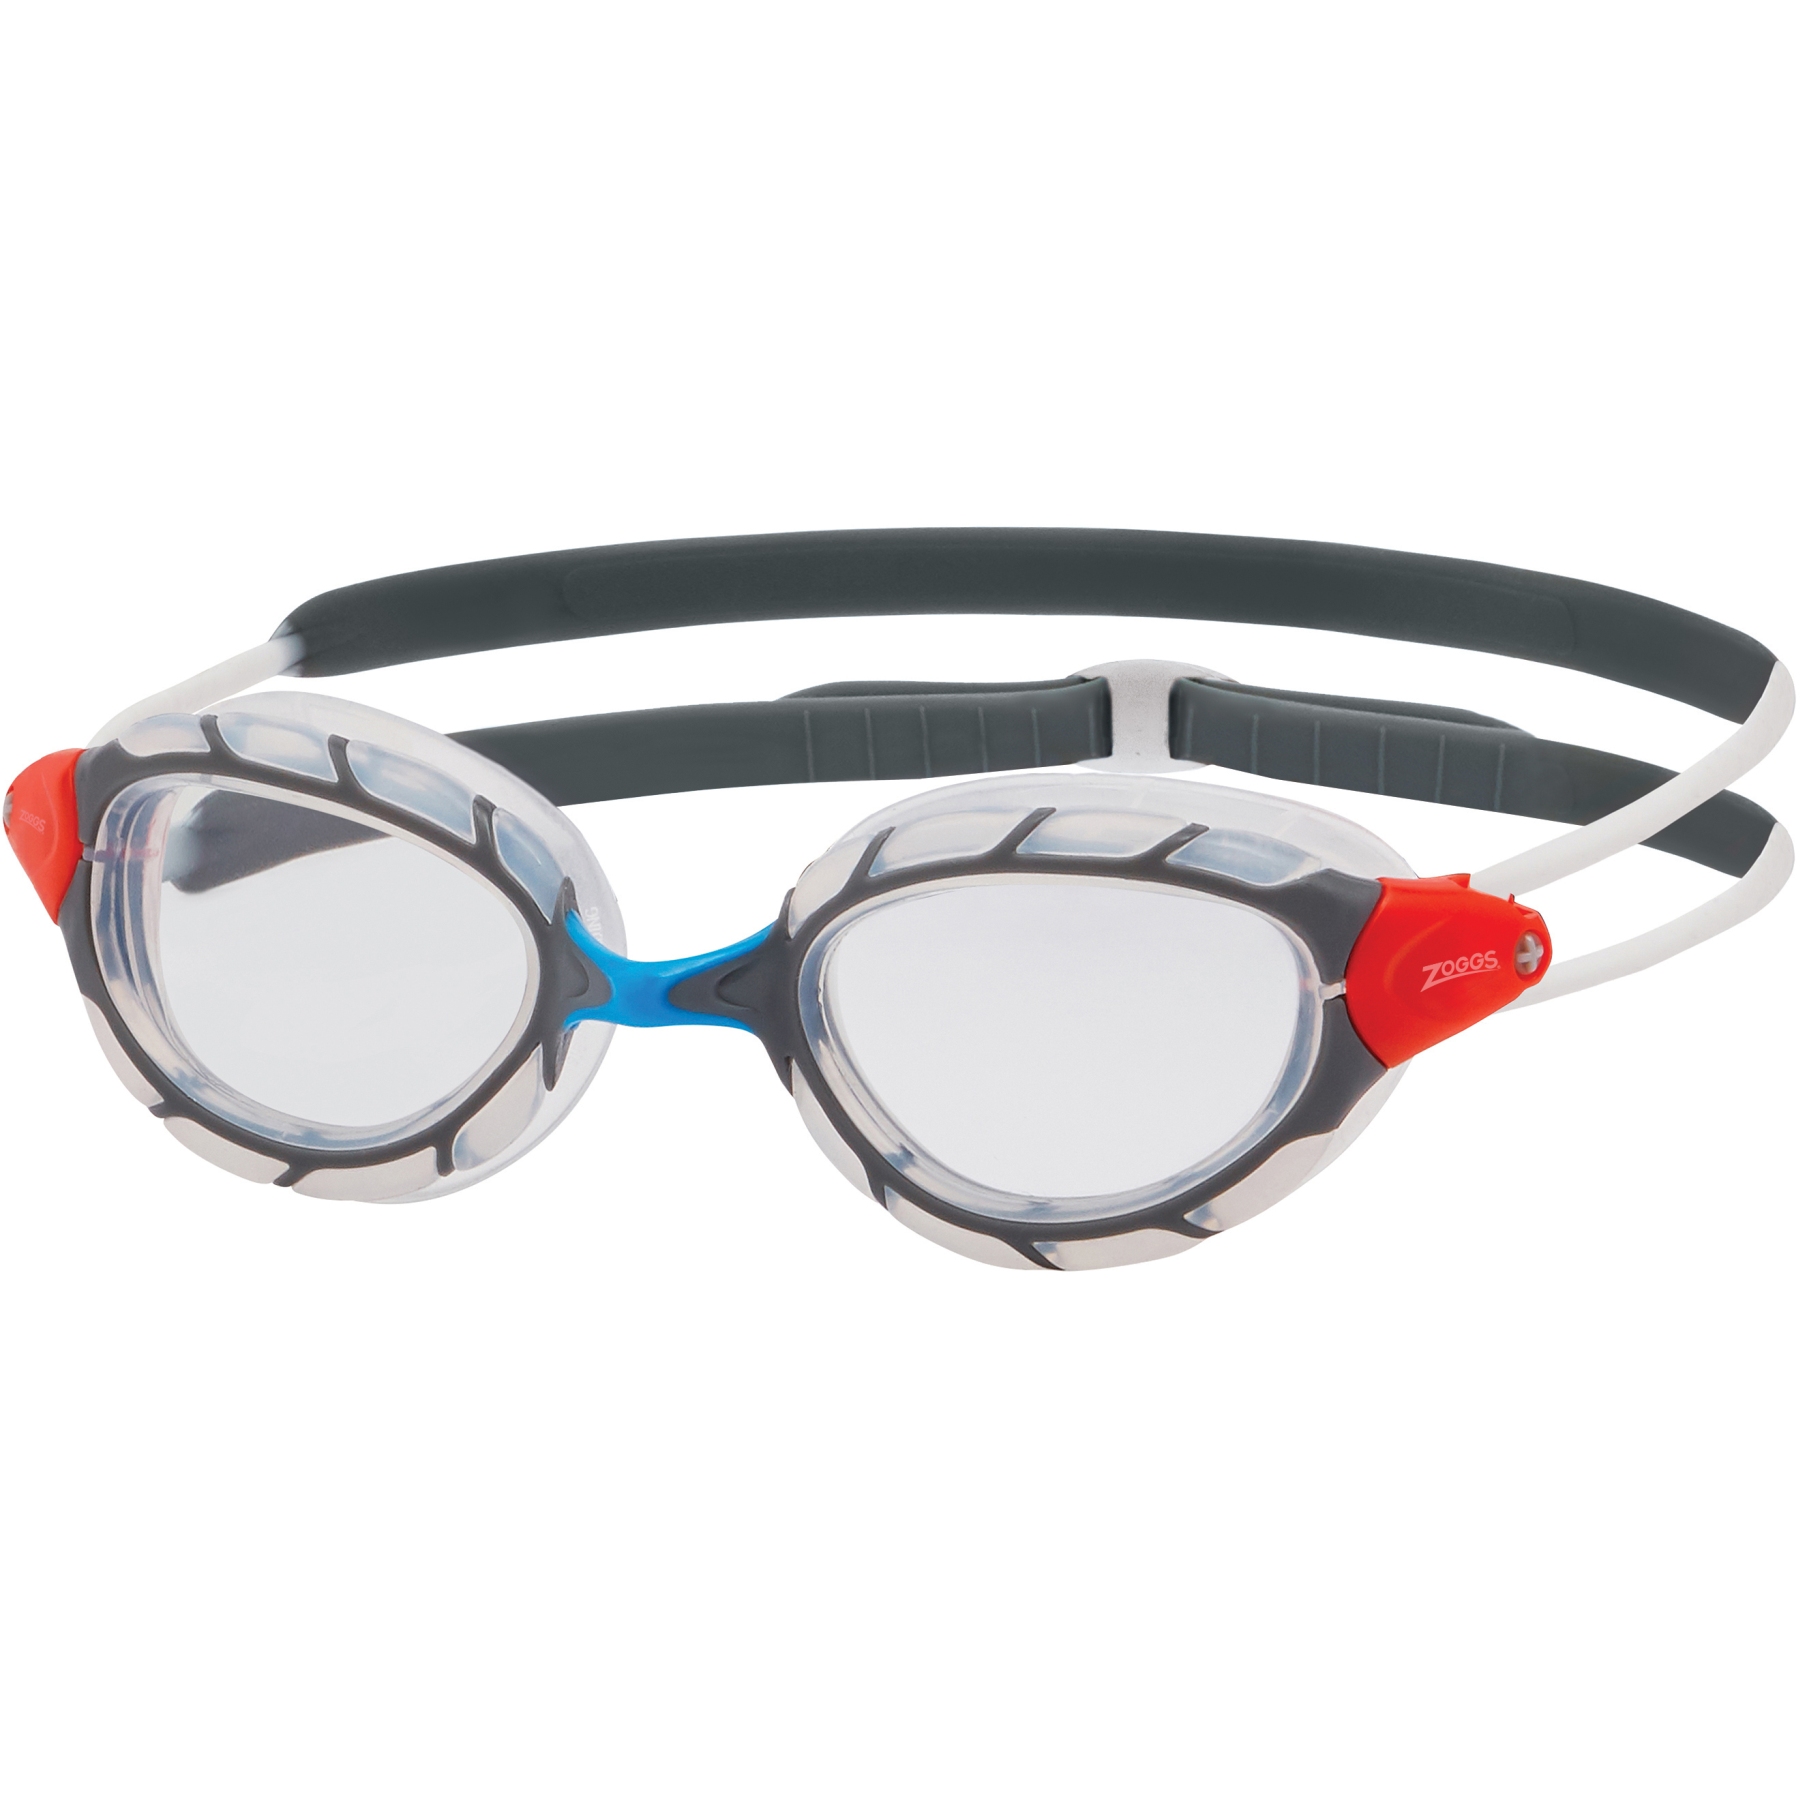 Produktbild von Zoggs Predator Schwimmbrille - Klare Gläser - Regular Fit - Transparent/Grau